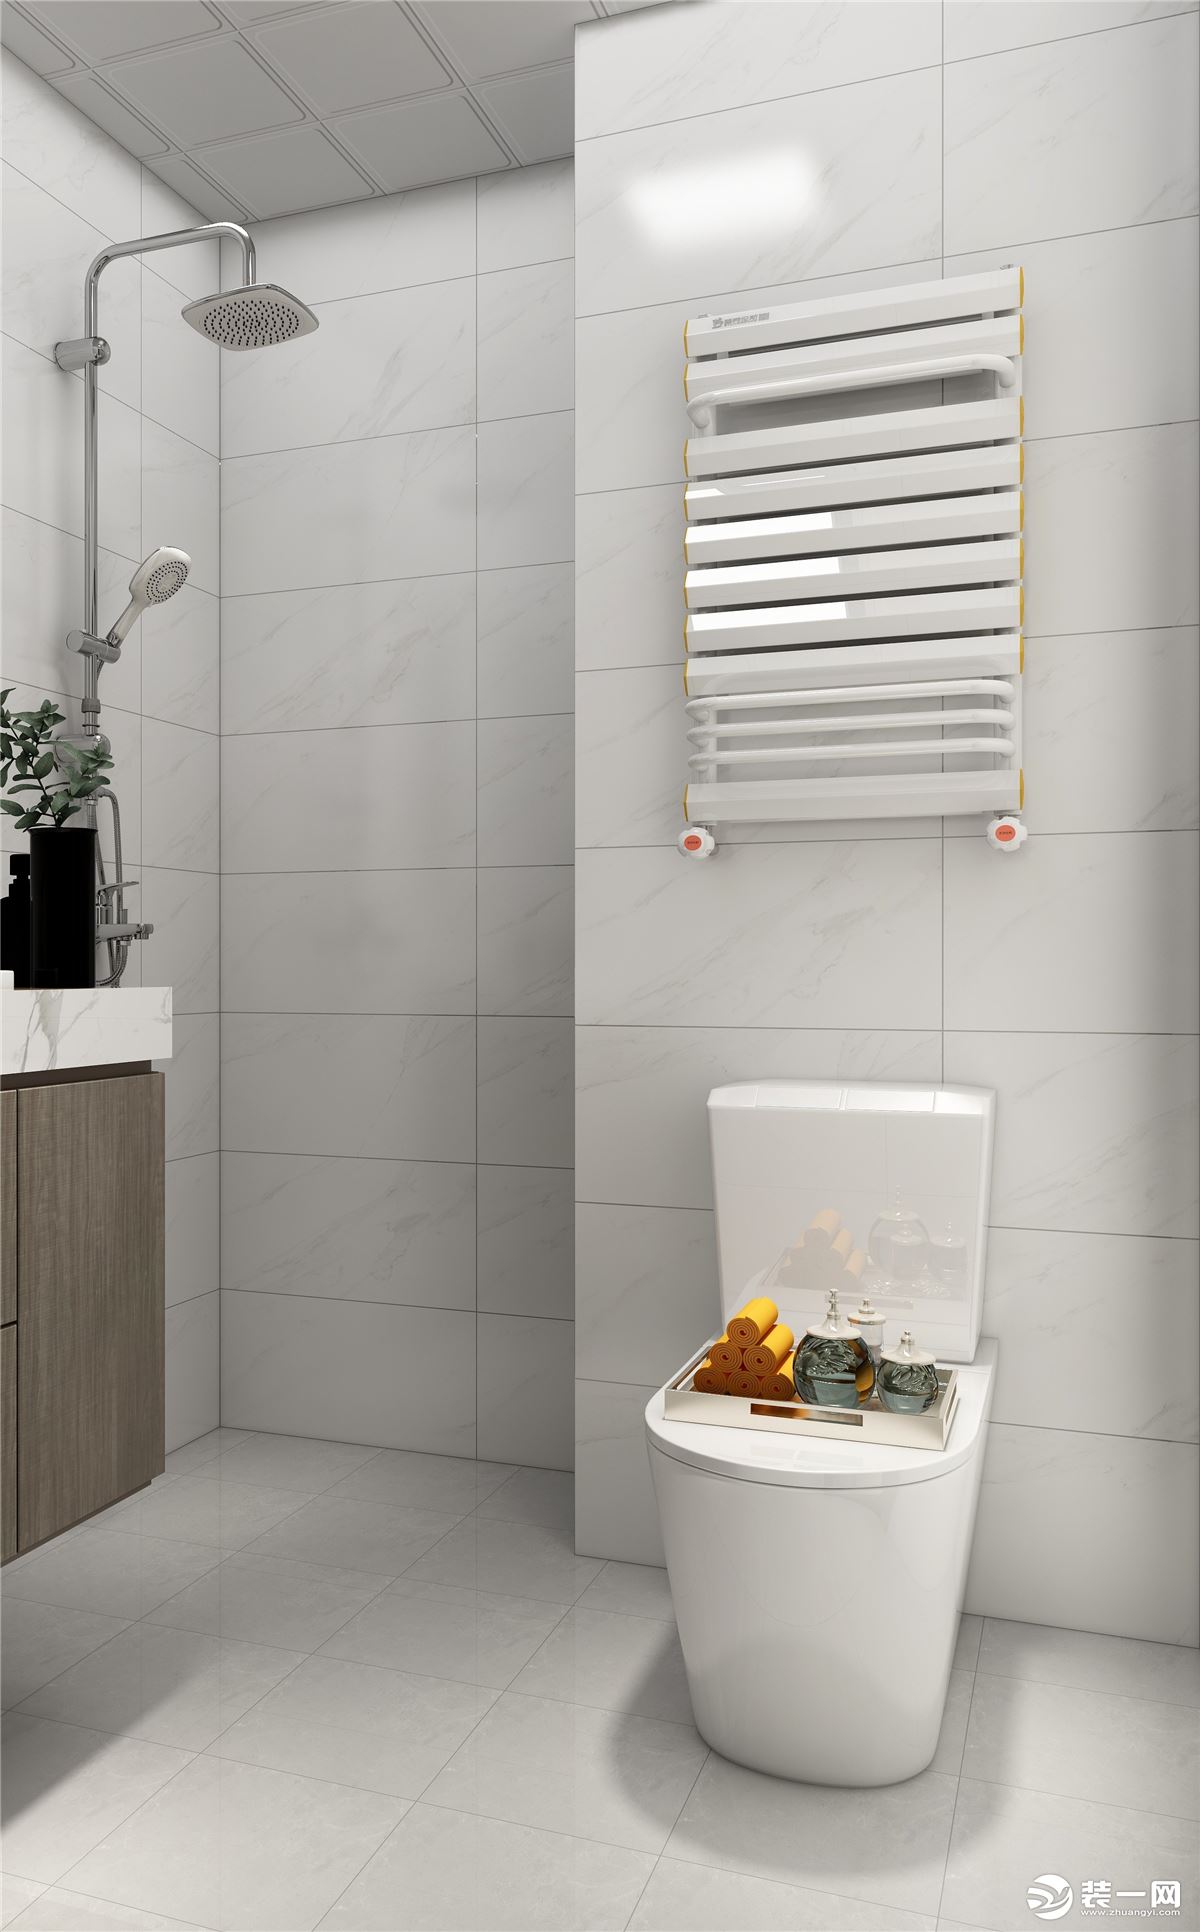 卫生间墙砖采用白灰色调，有了视觉上的效果对比，增加了空间的高级感，整体搭配下来时尚又大气。